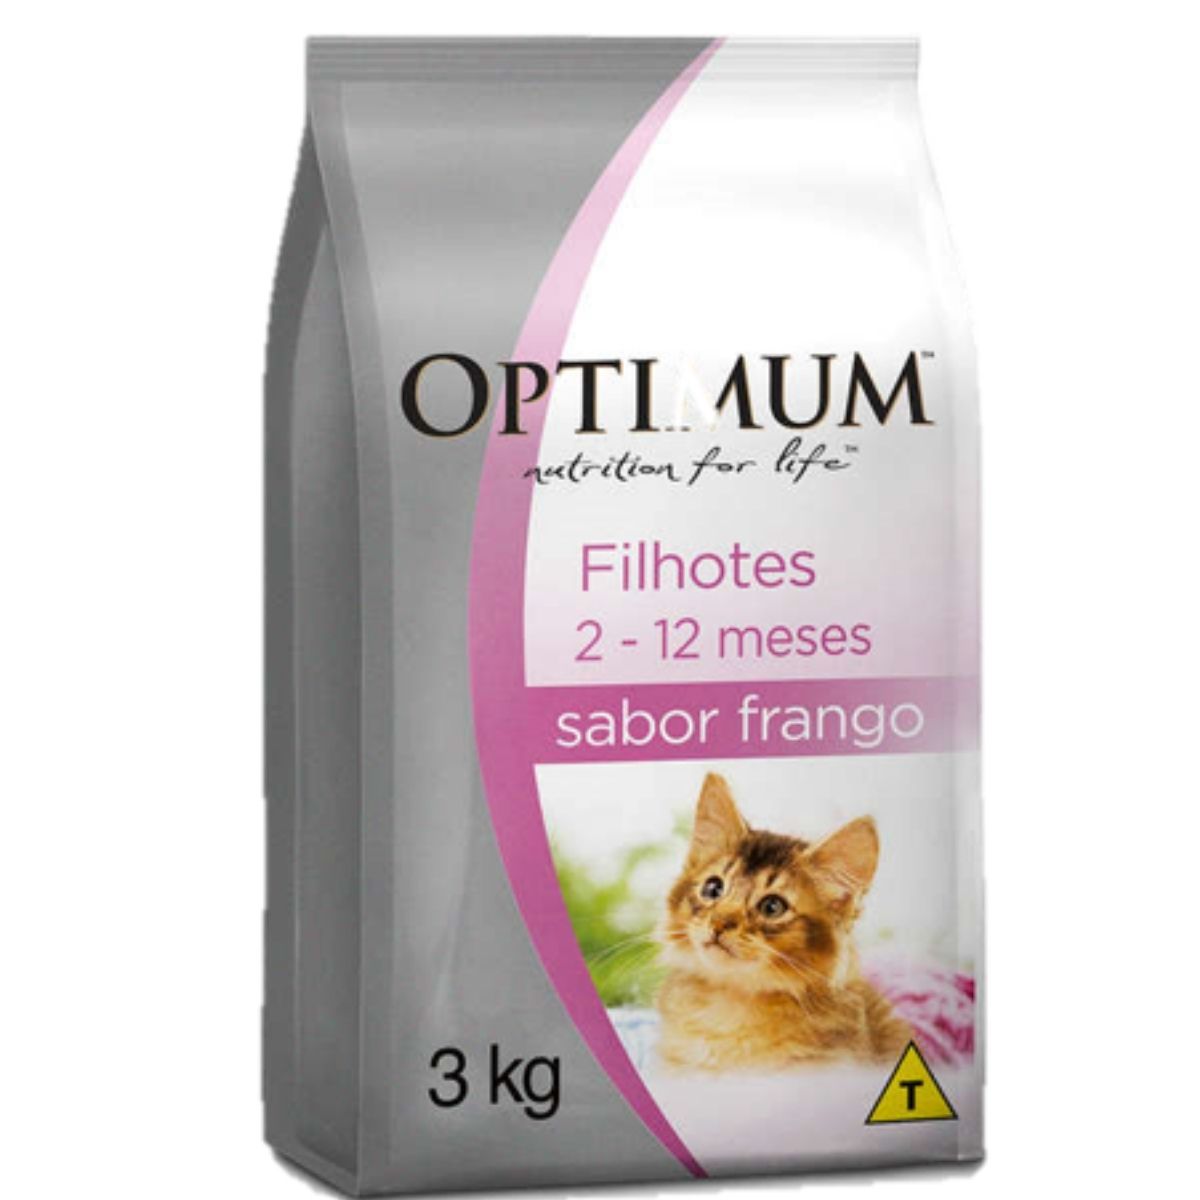 Ração Optimum Premium Para Gatos Filhotes Sabor Frango 3kg grátis 2 saches